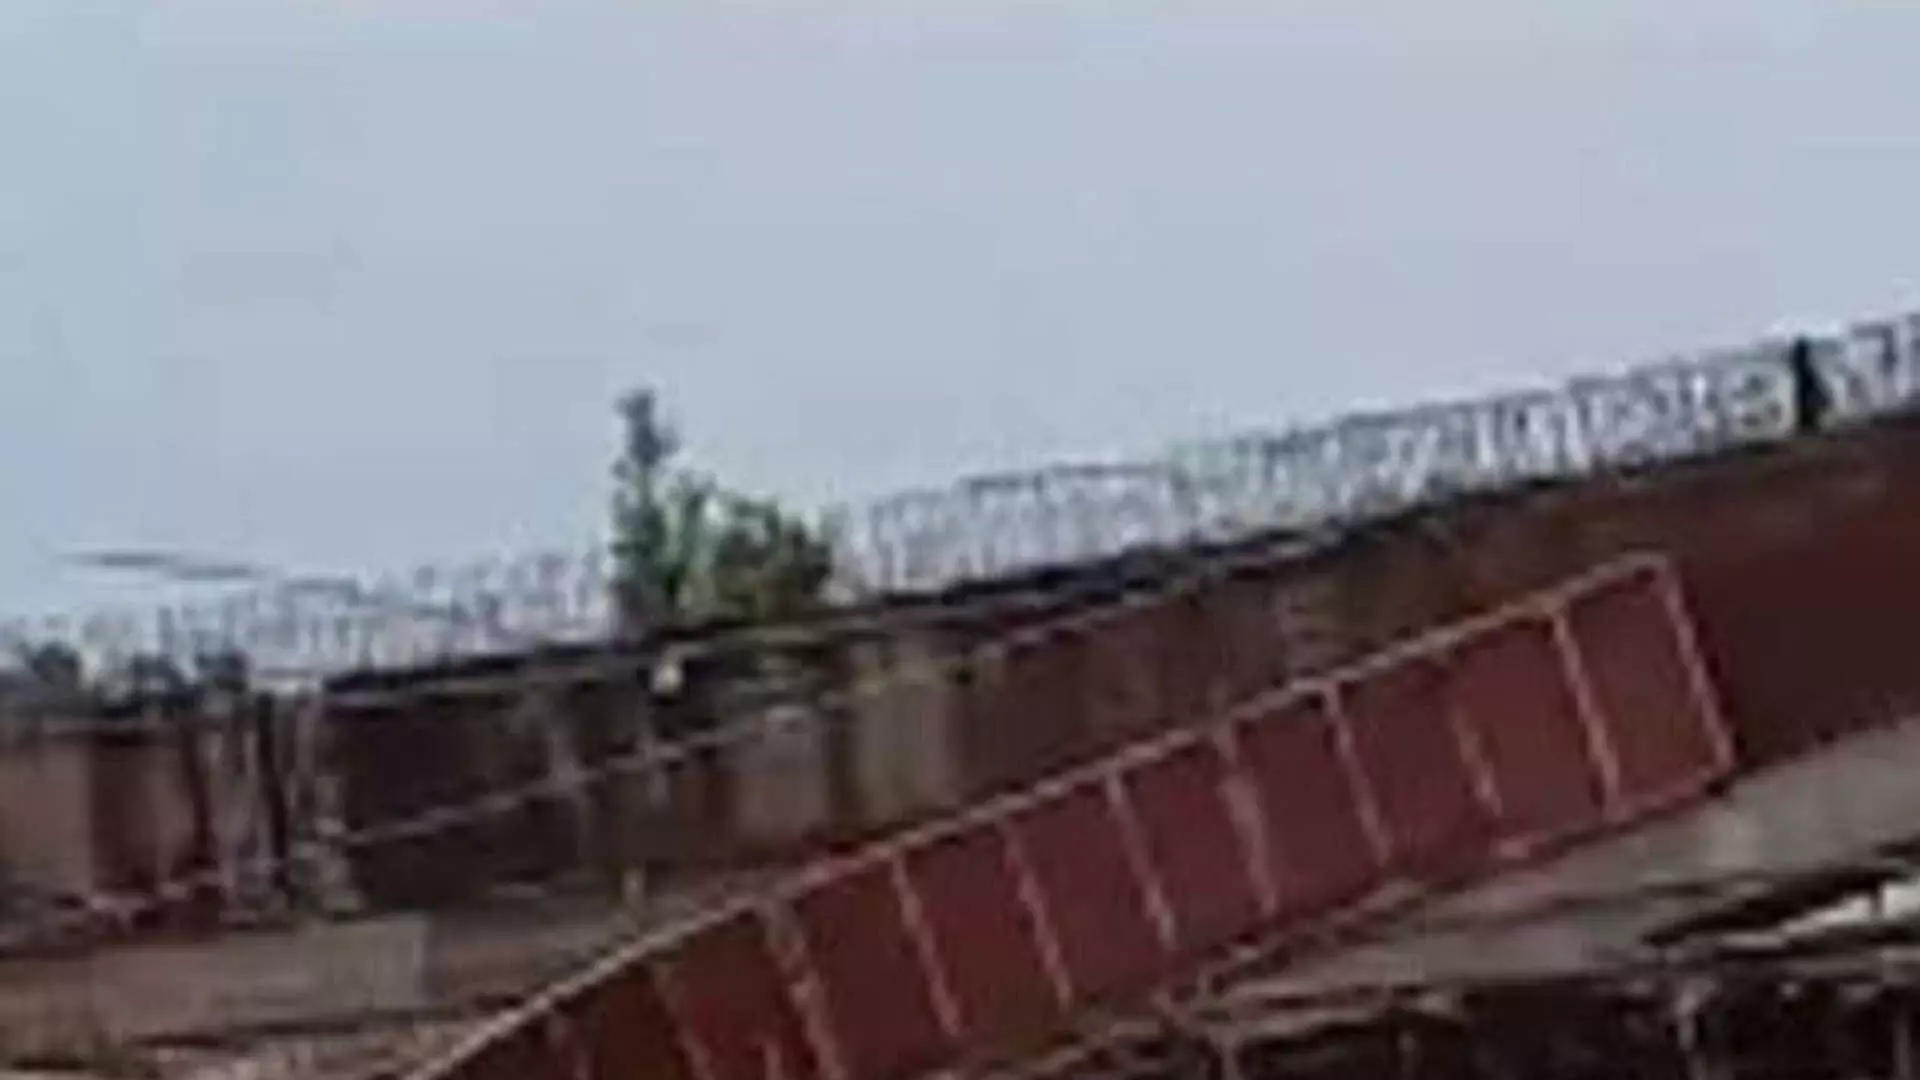 Bihar News: बिहार में 11 दिनों में पांचवां पुल टुटा